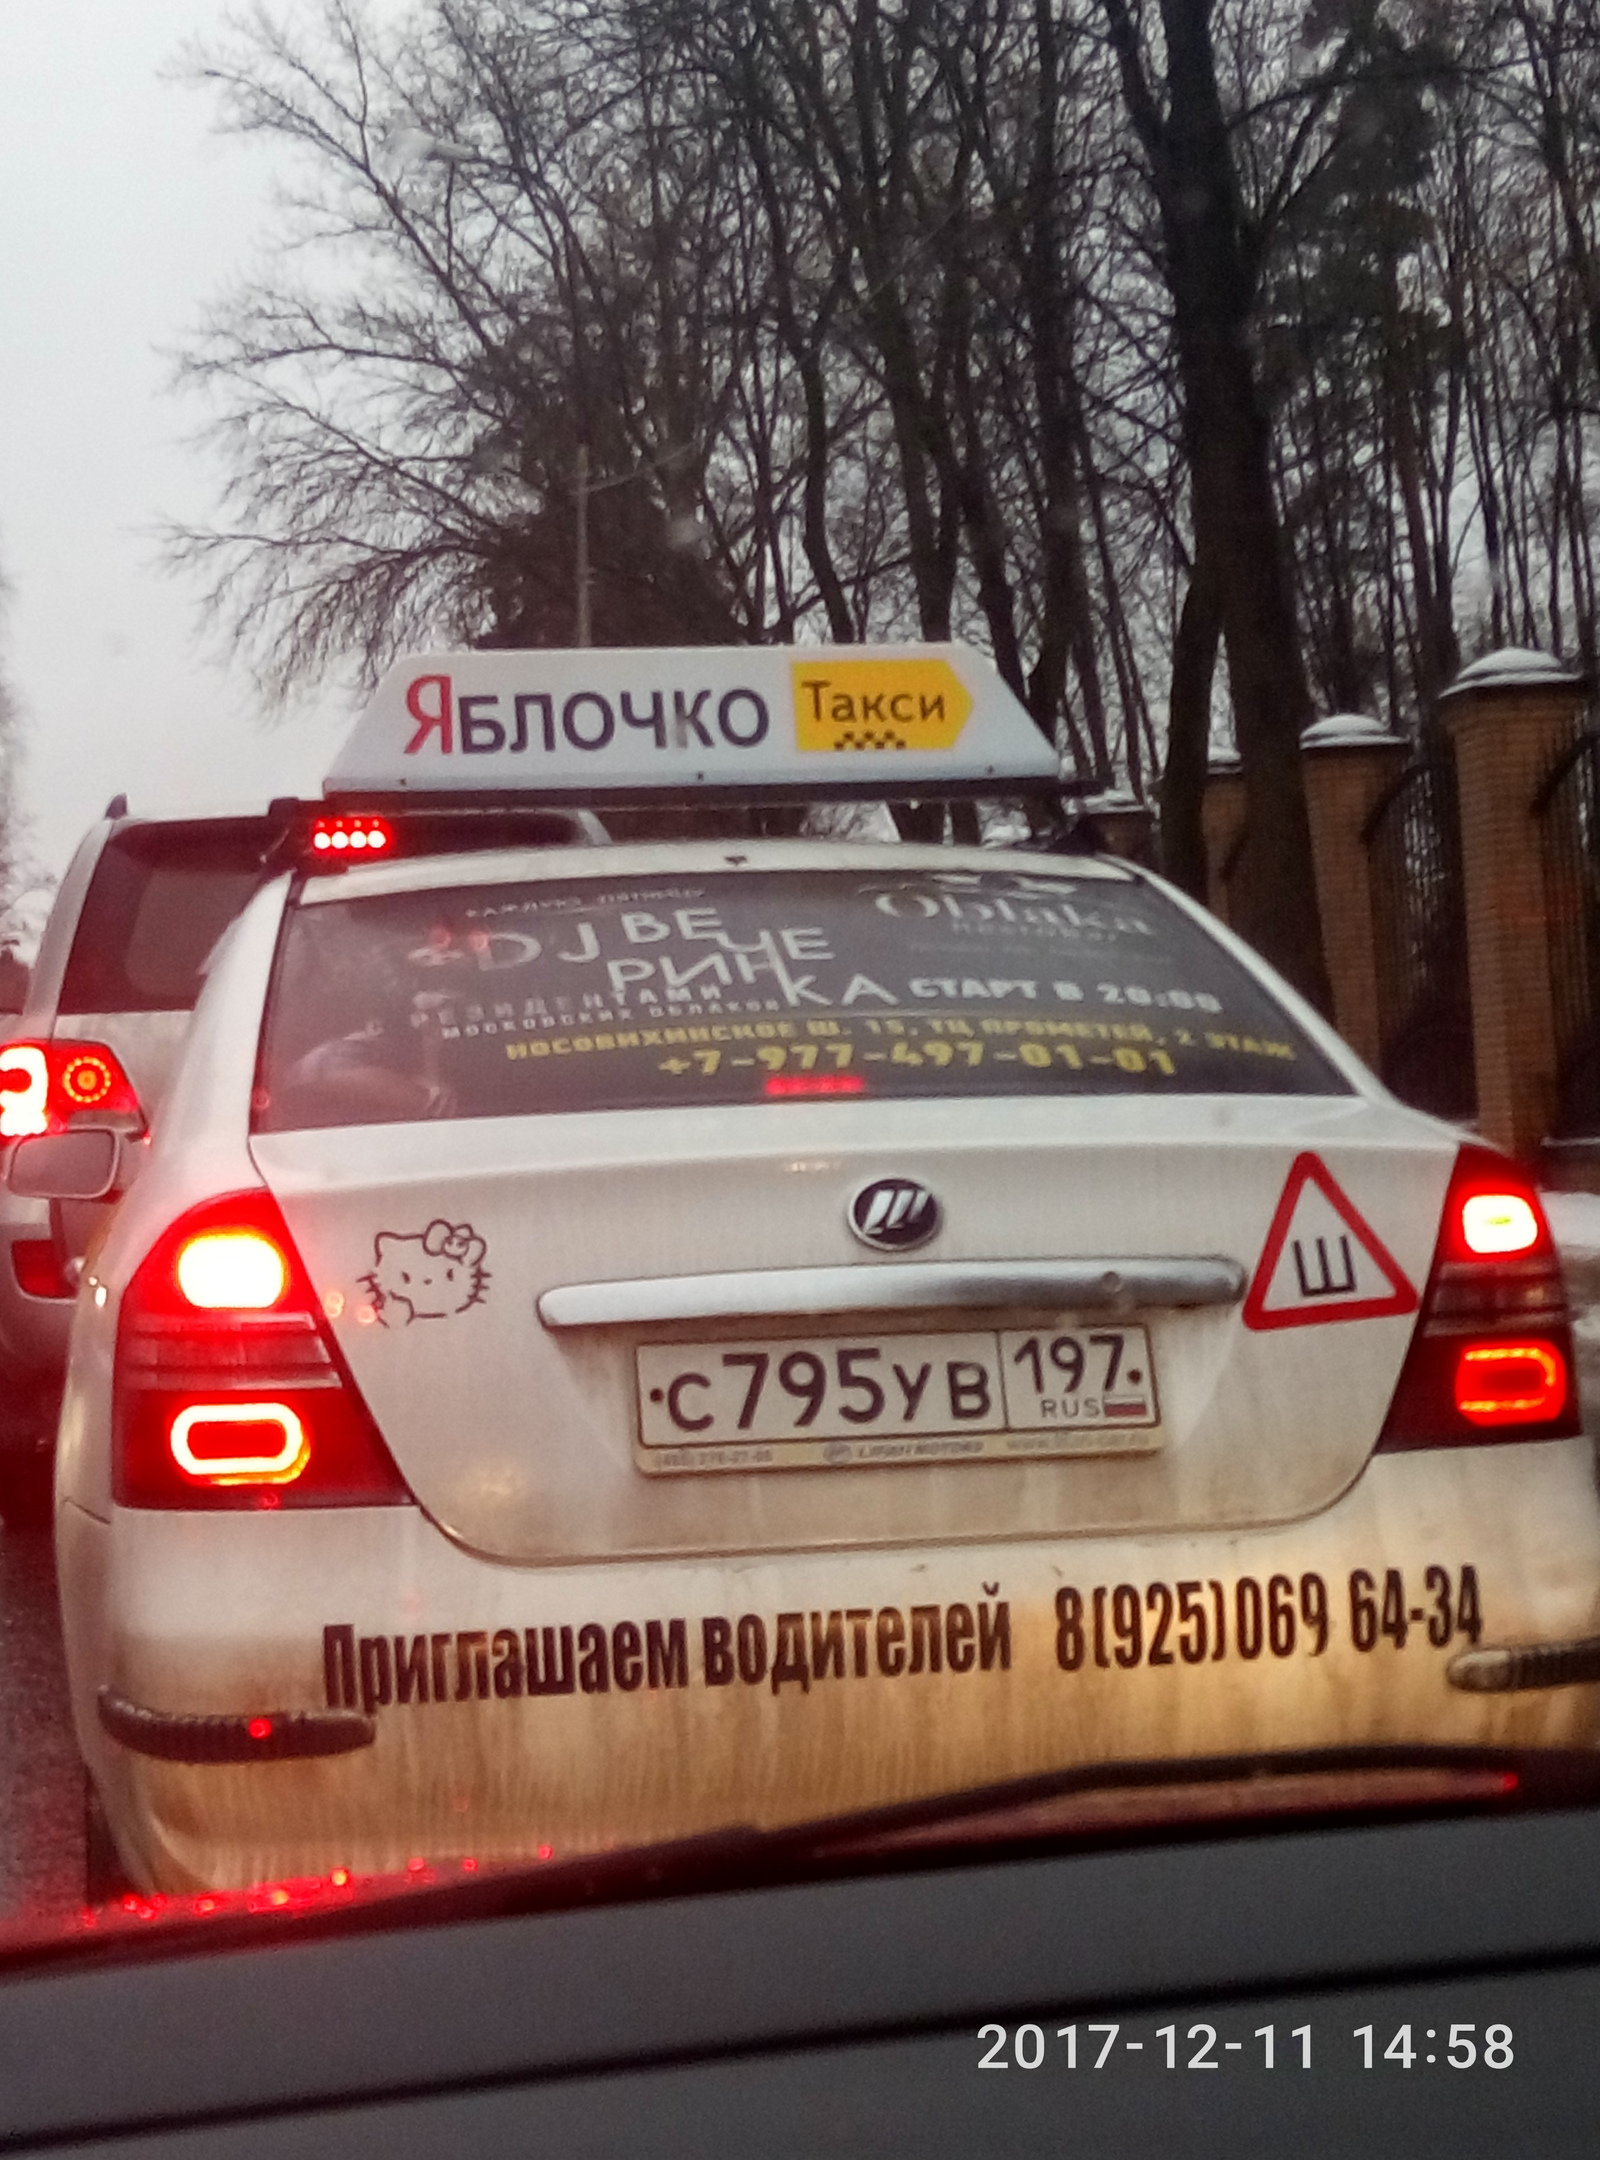 Яблочко железнодорожный телефон. Такси яблочко. Такси яблочко Железнодорожный. Номер такси яблочко в Железнодорожном. Такси с надписью коммунисты России.